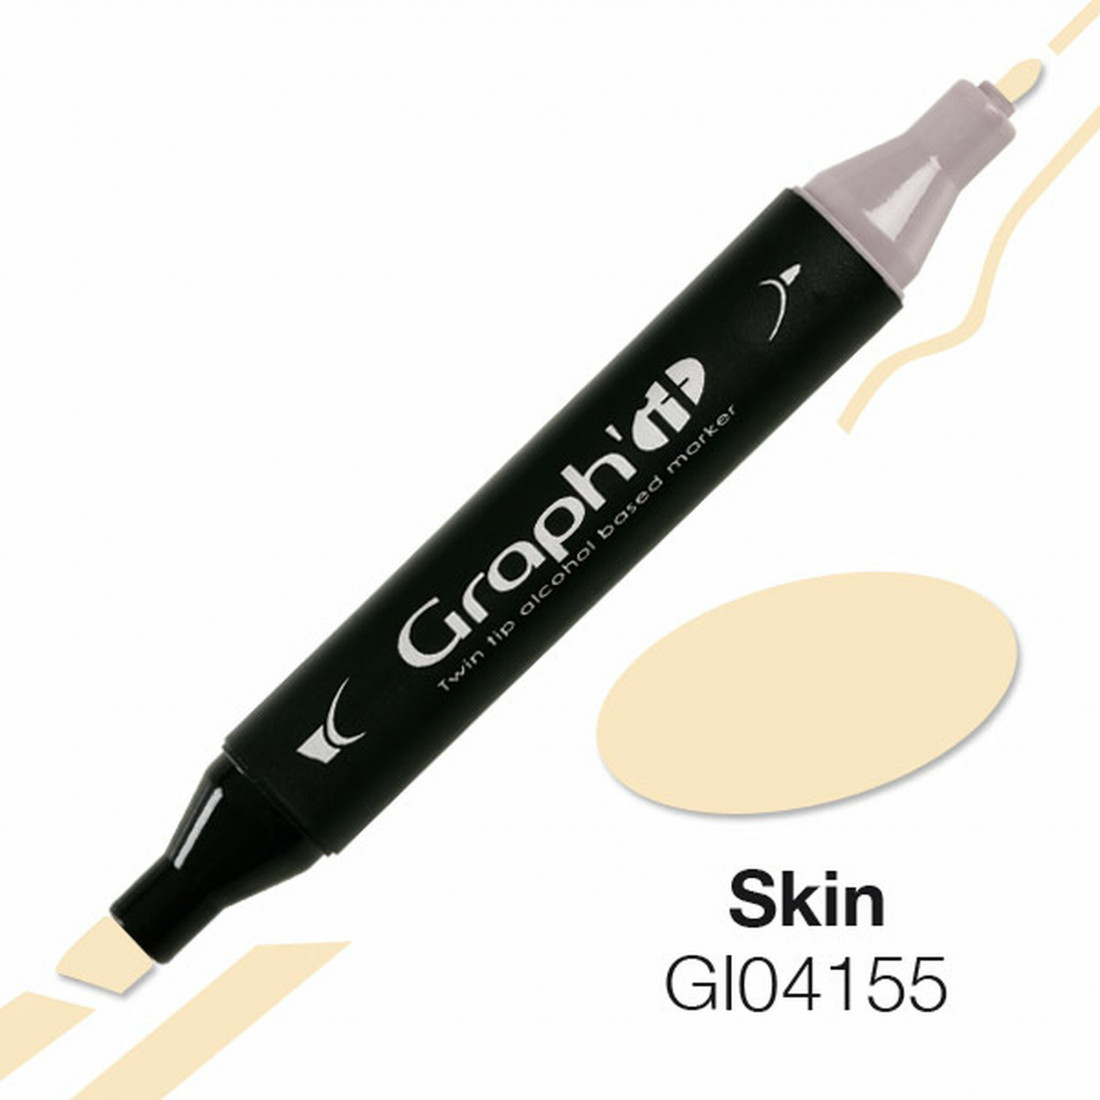 Μαρκαδόροι Graph it σε σετ 3 τεμαχίων με βάση το αλκοόλ για ζωγραφική σε αποχρώσεις δέρματος G100373